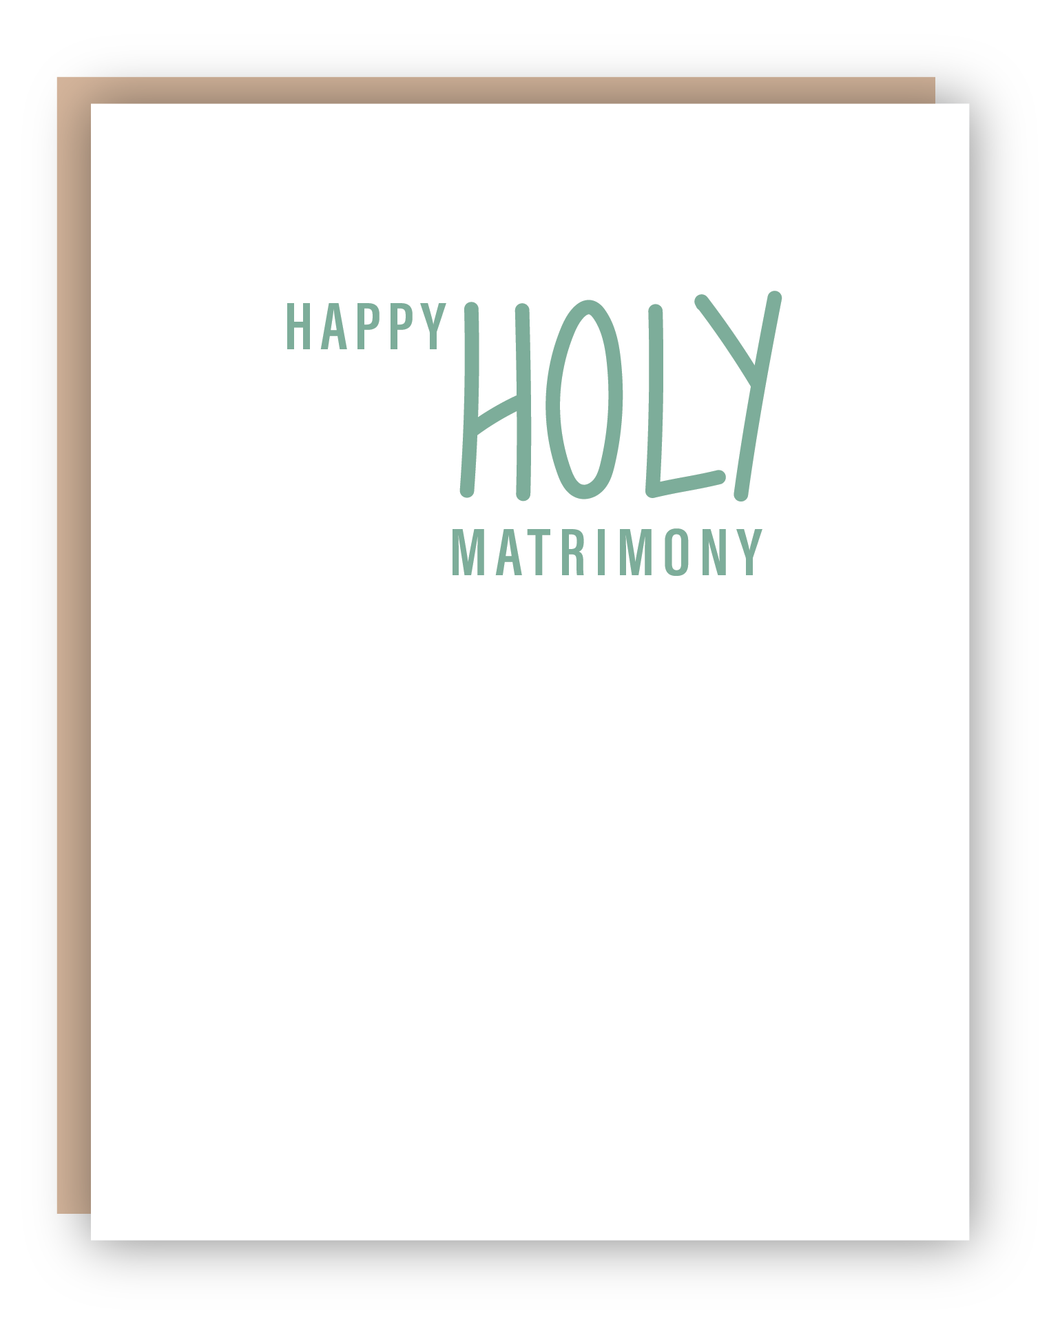 HOLY MATRIMONY